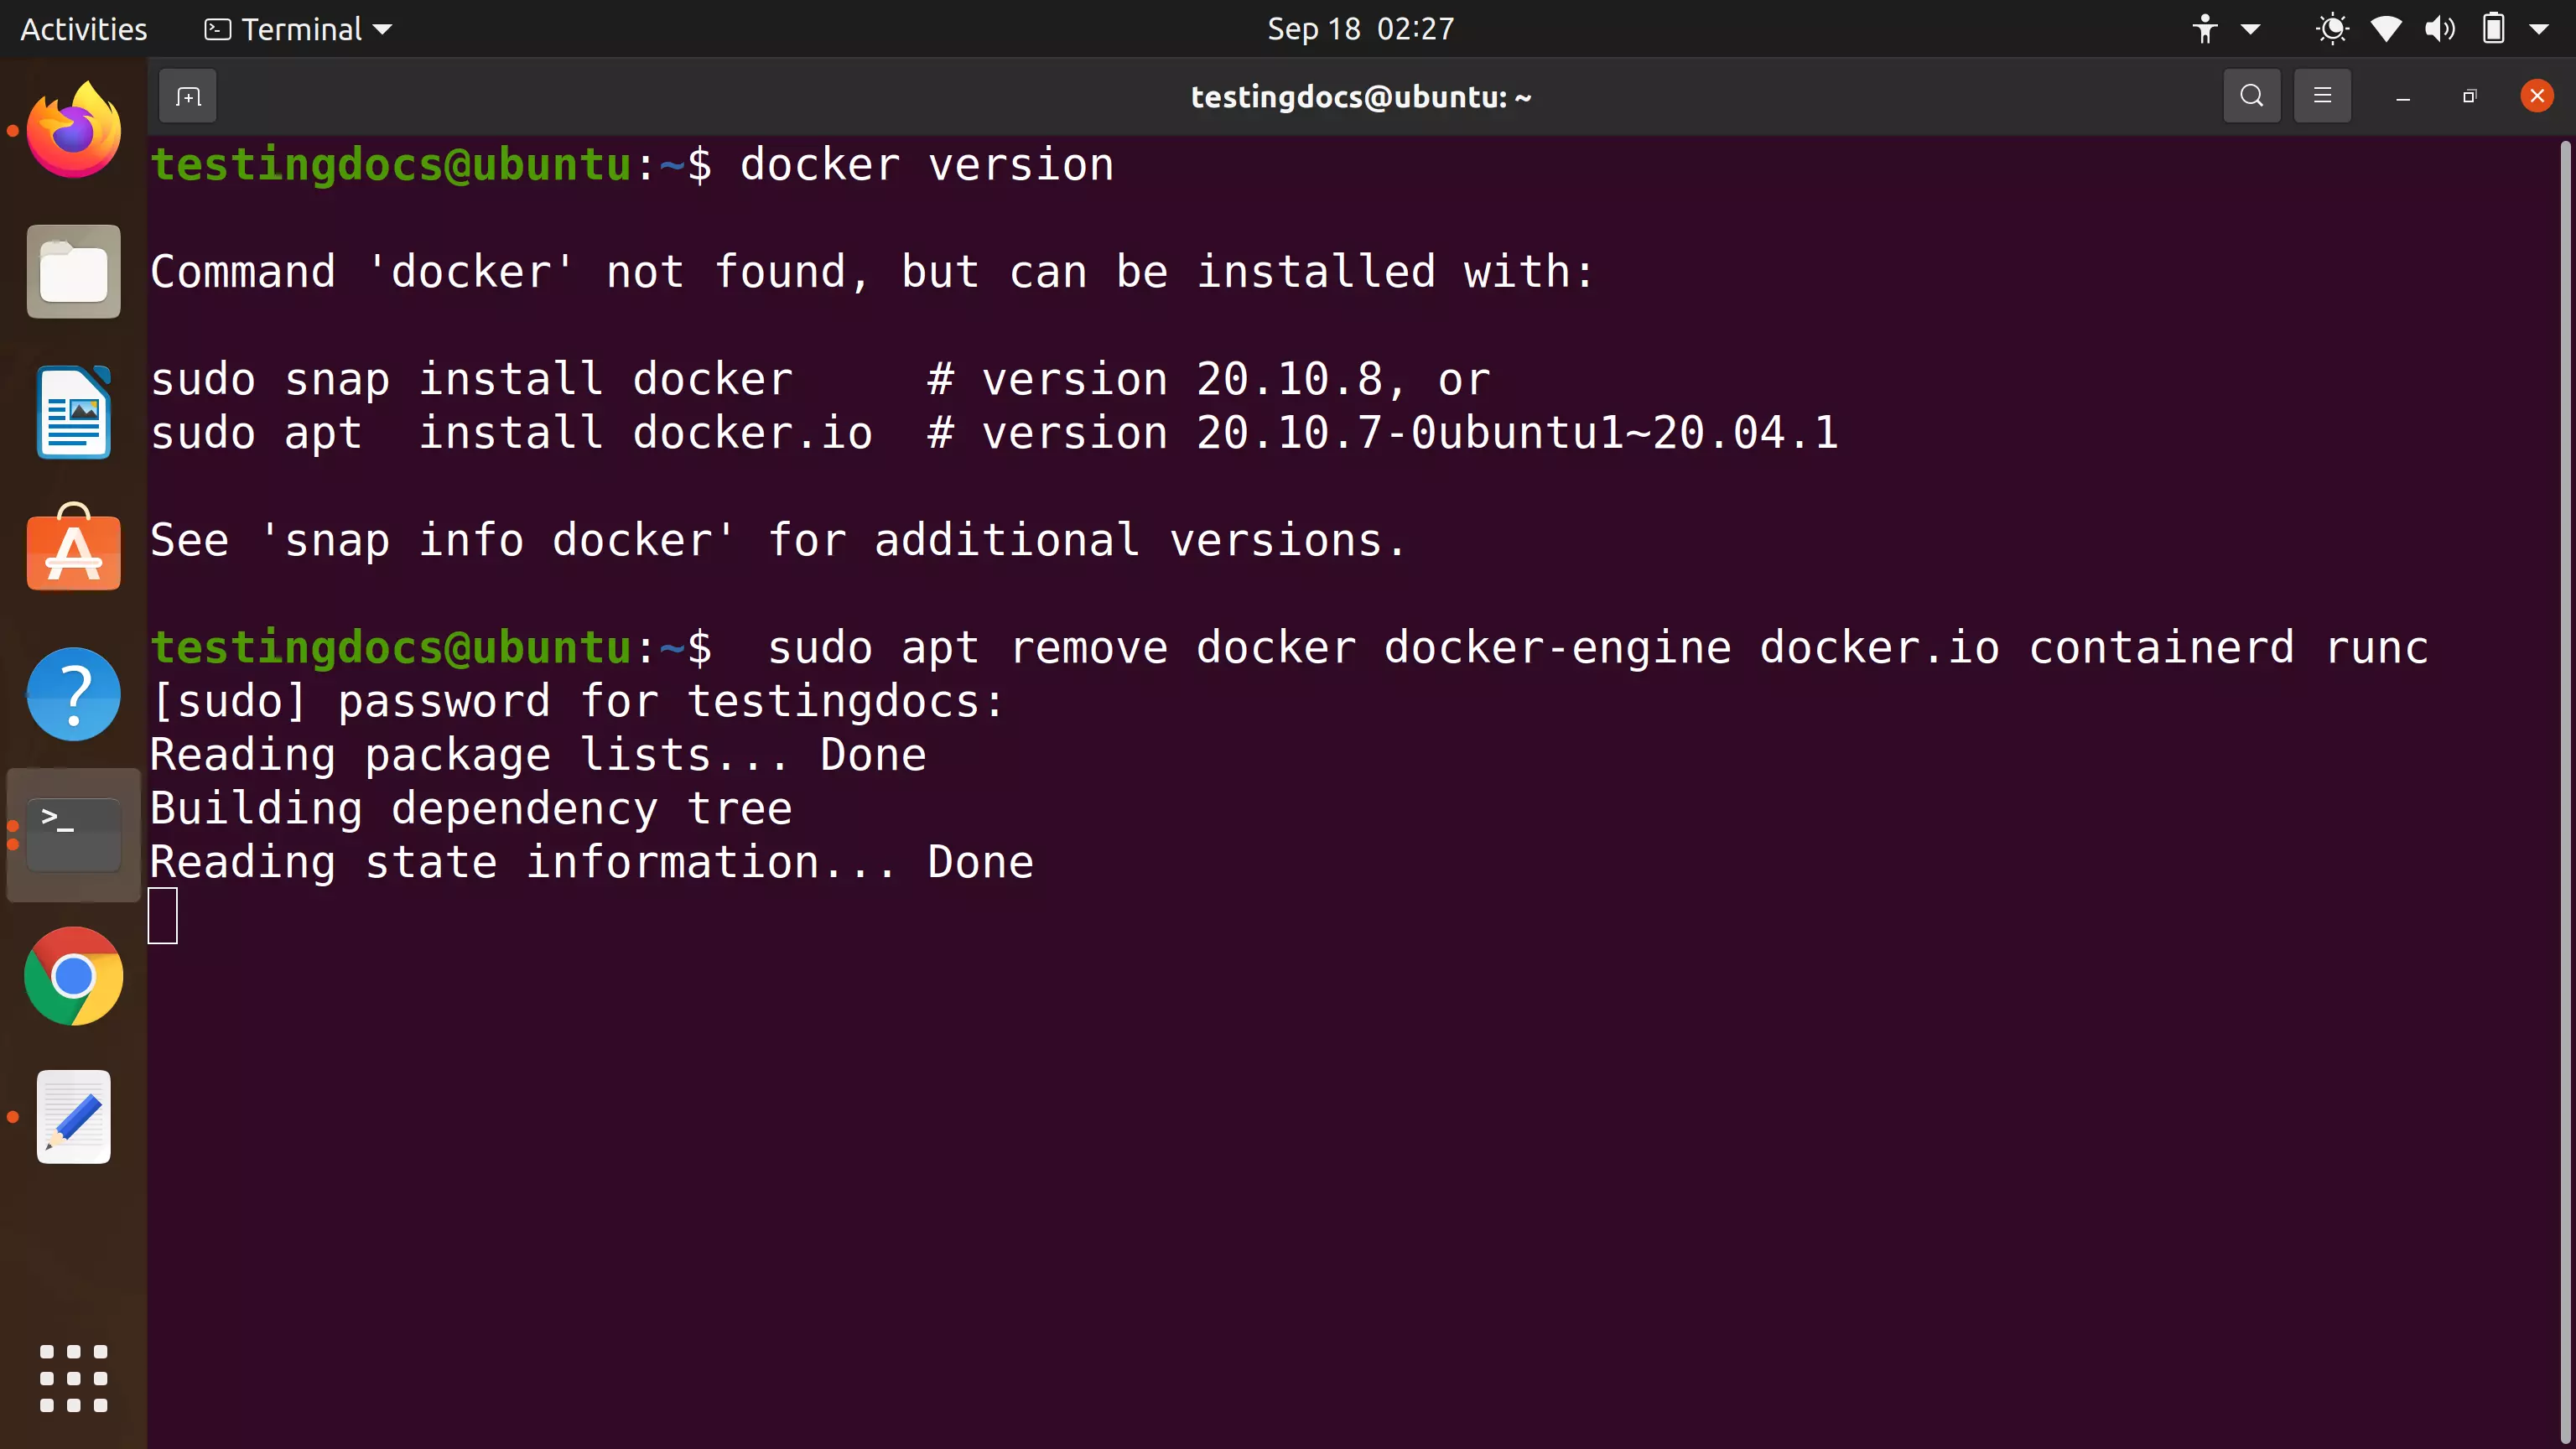 Docker Install Check